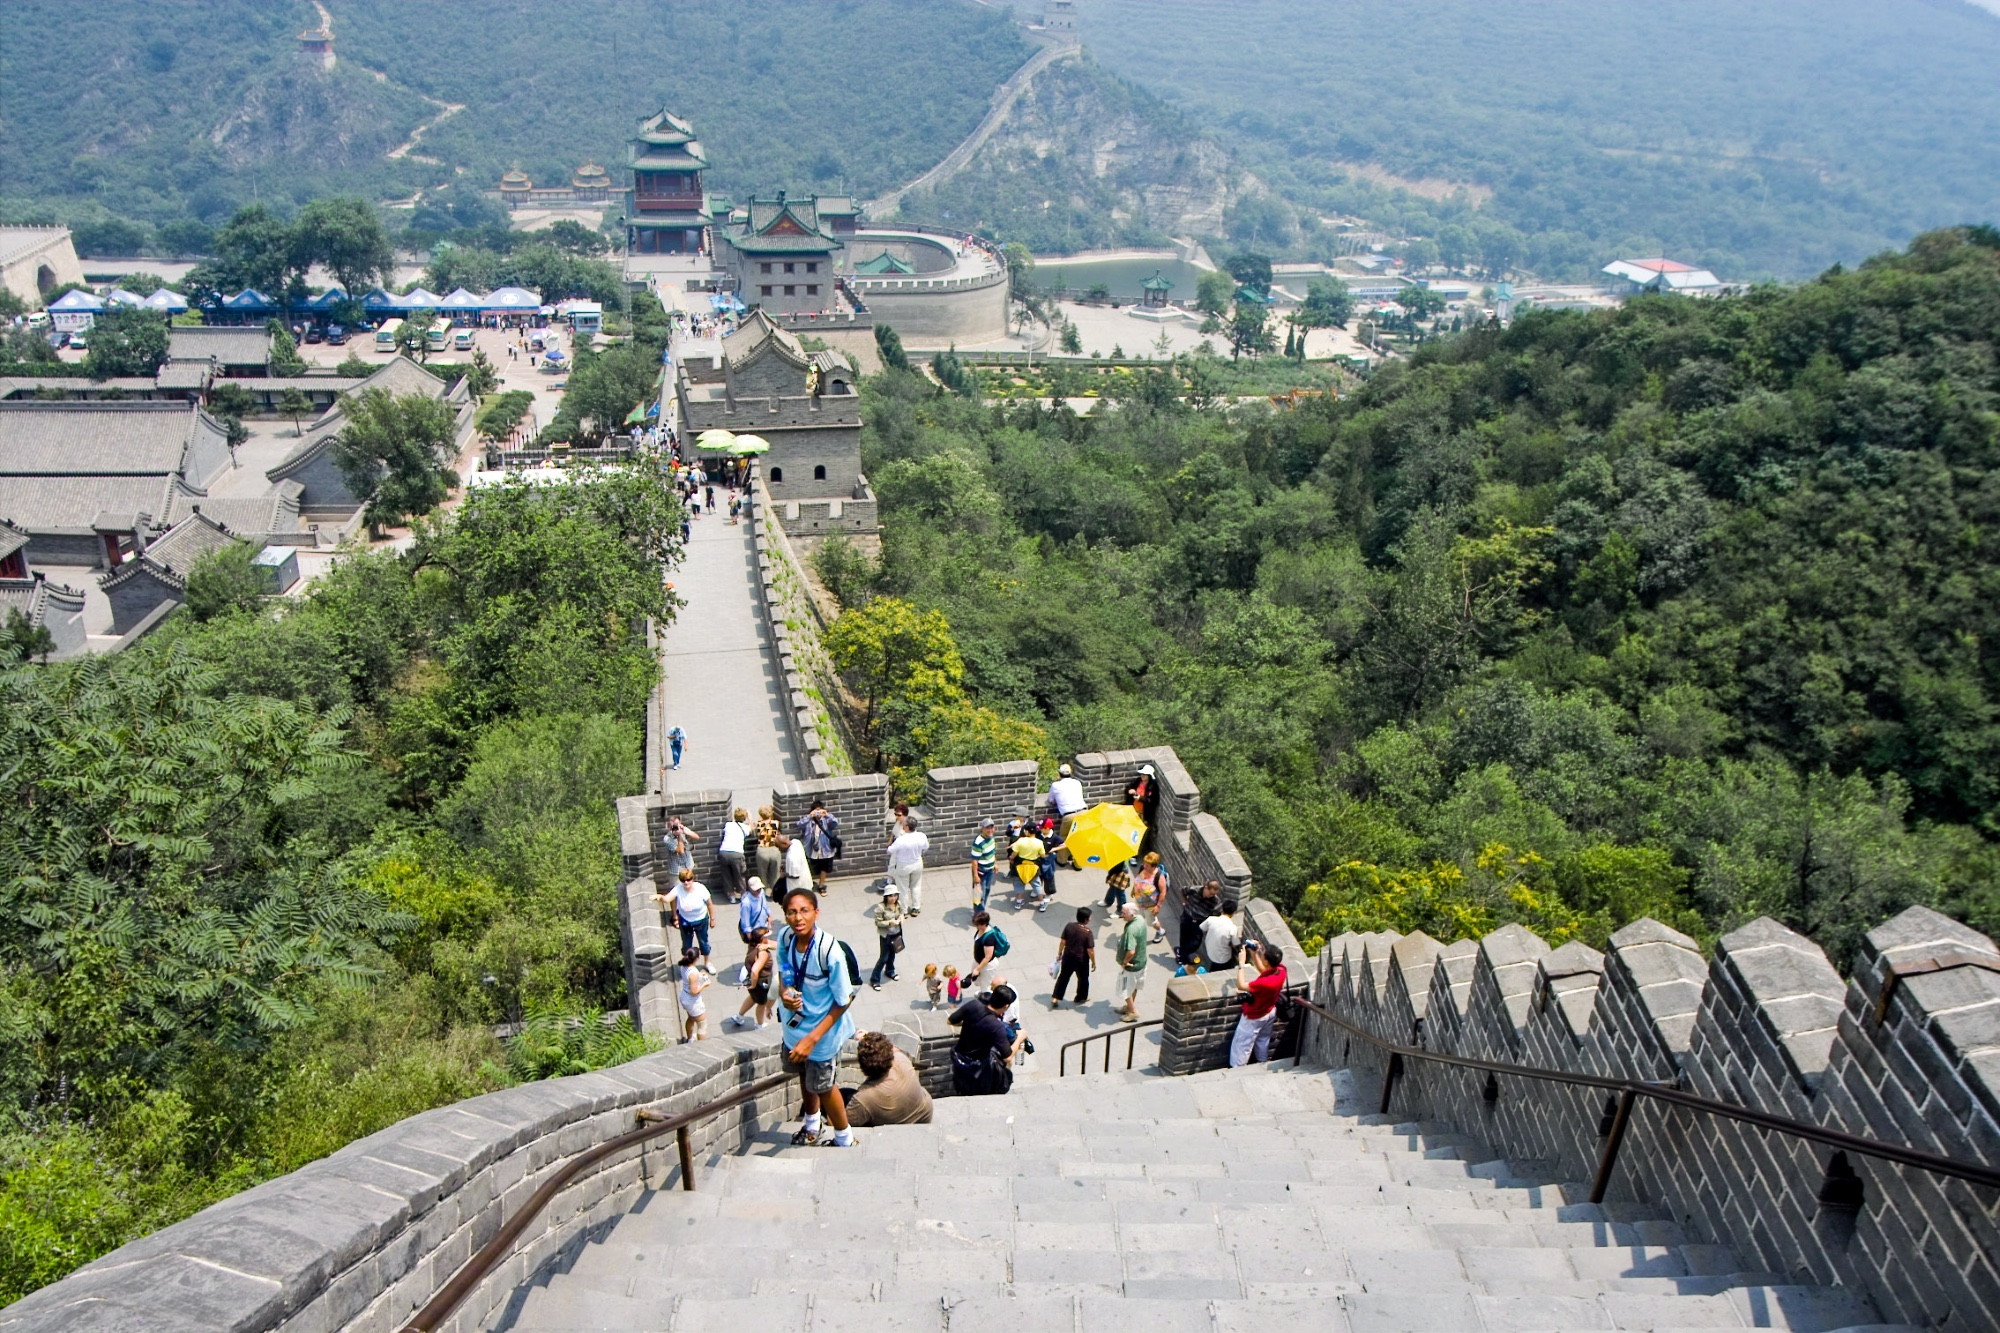 The Great Wall at Juyongguan